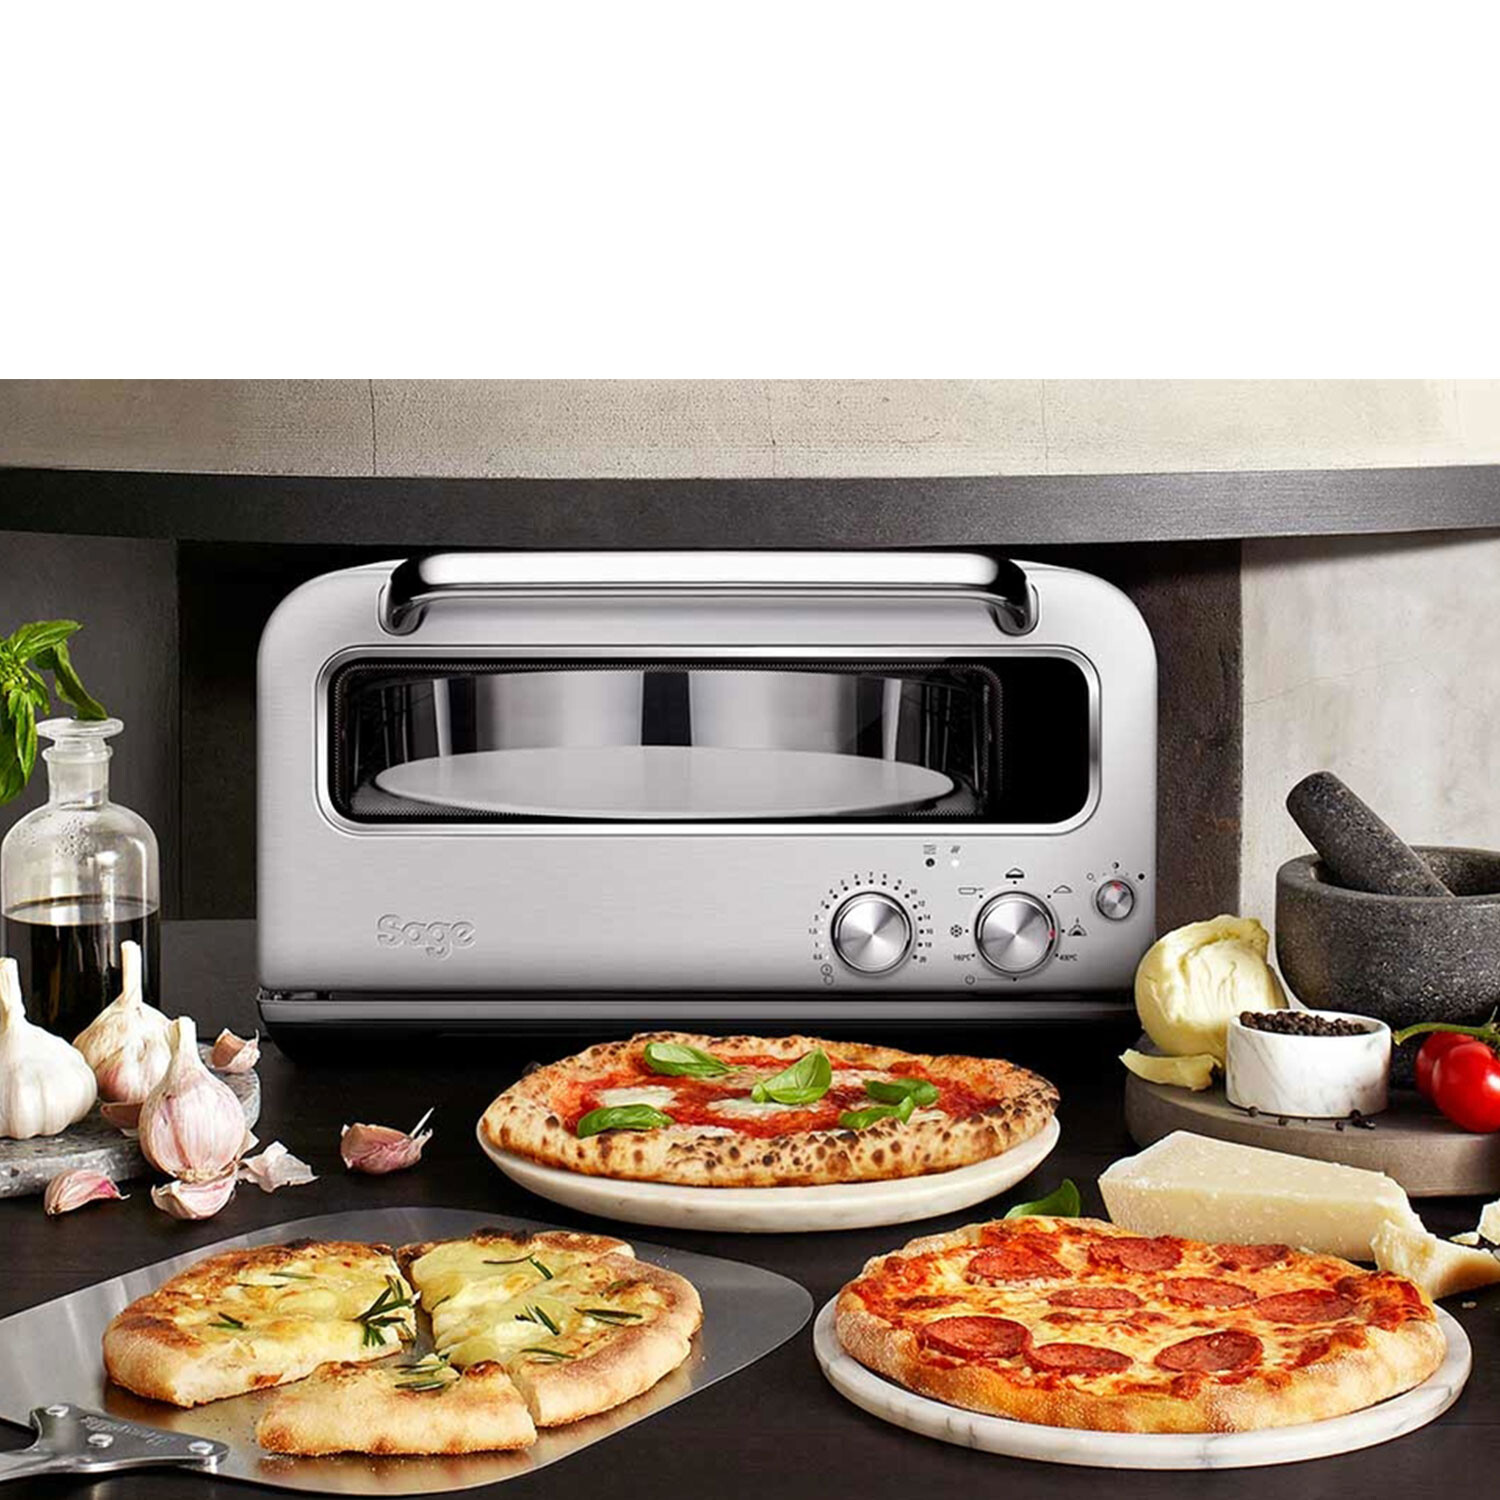 The Smart Oven® Pizzaiolo 